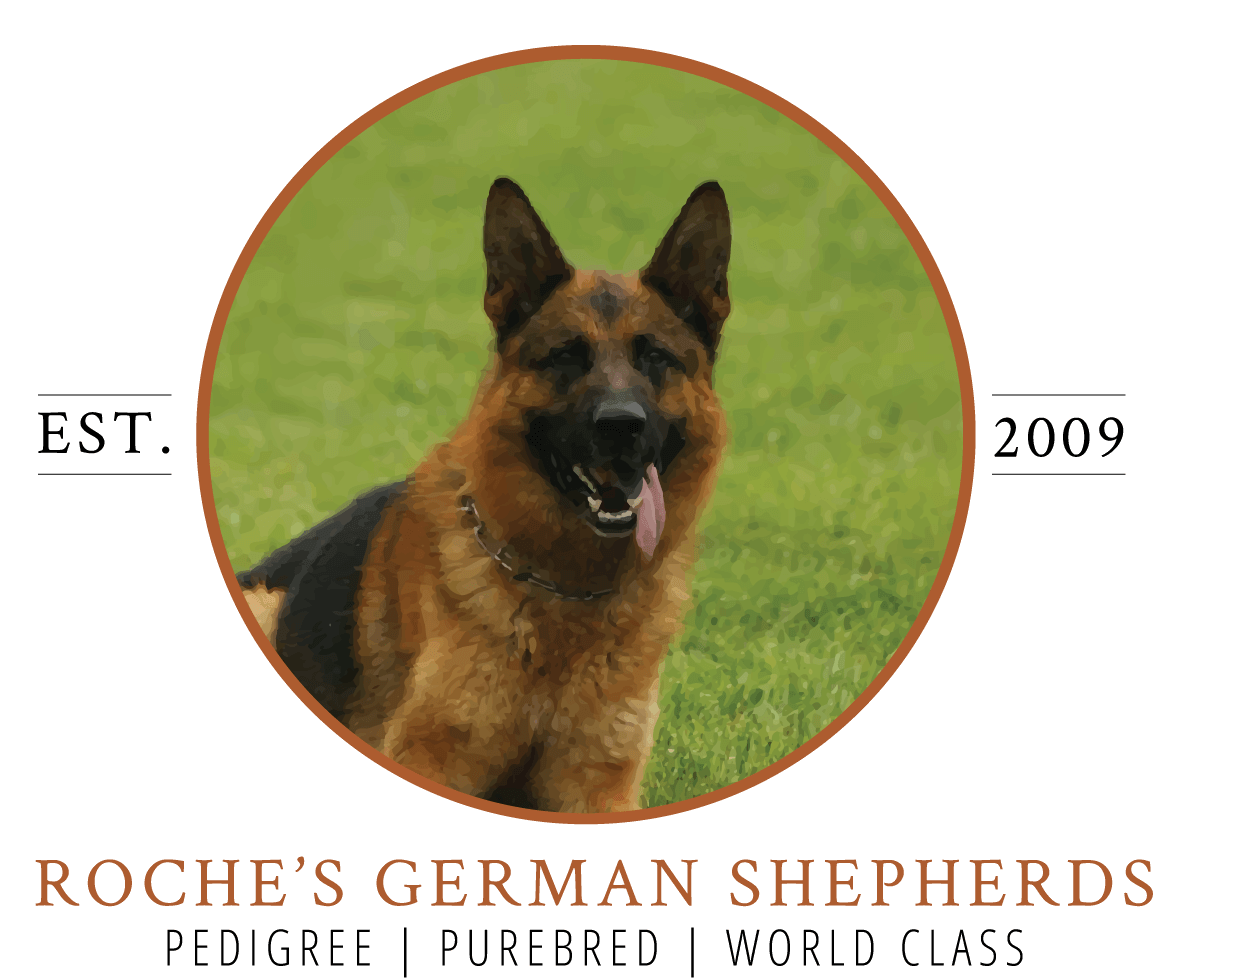 Roche's German Shepherds